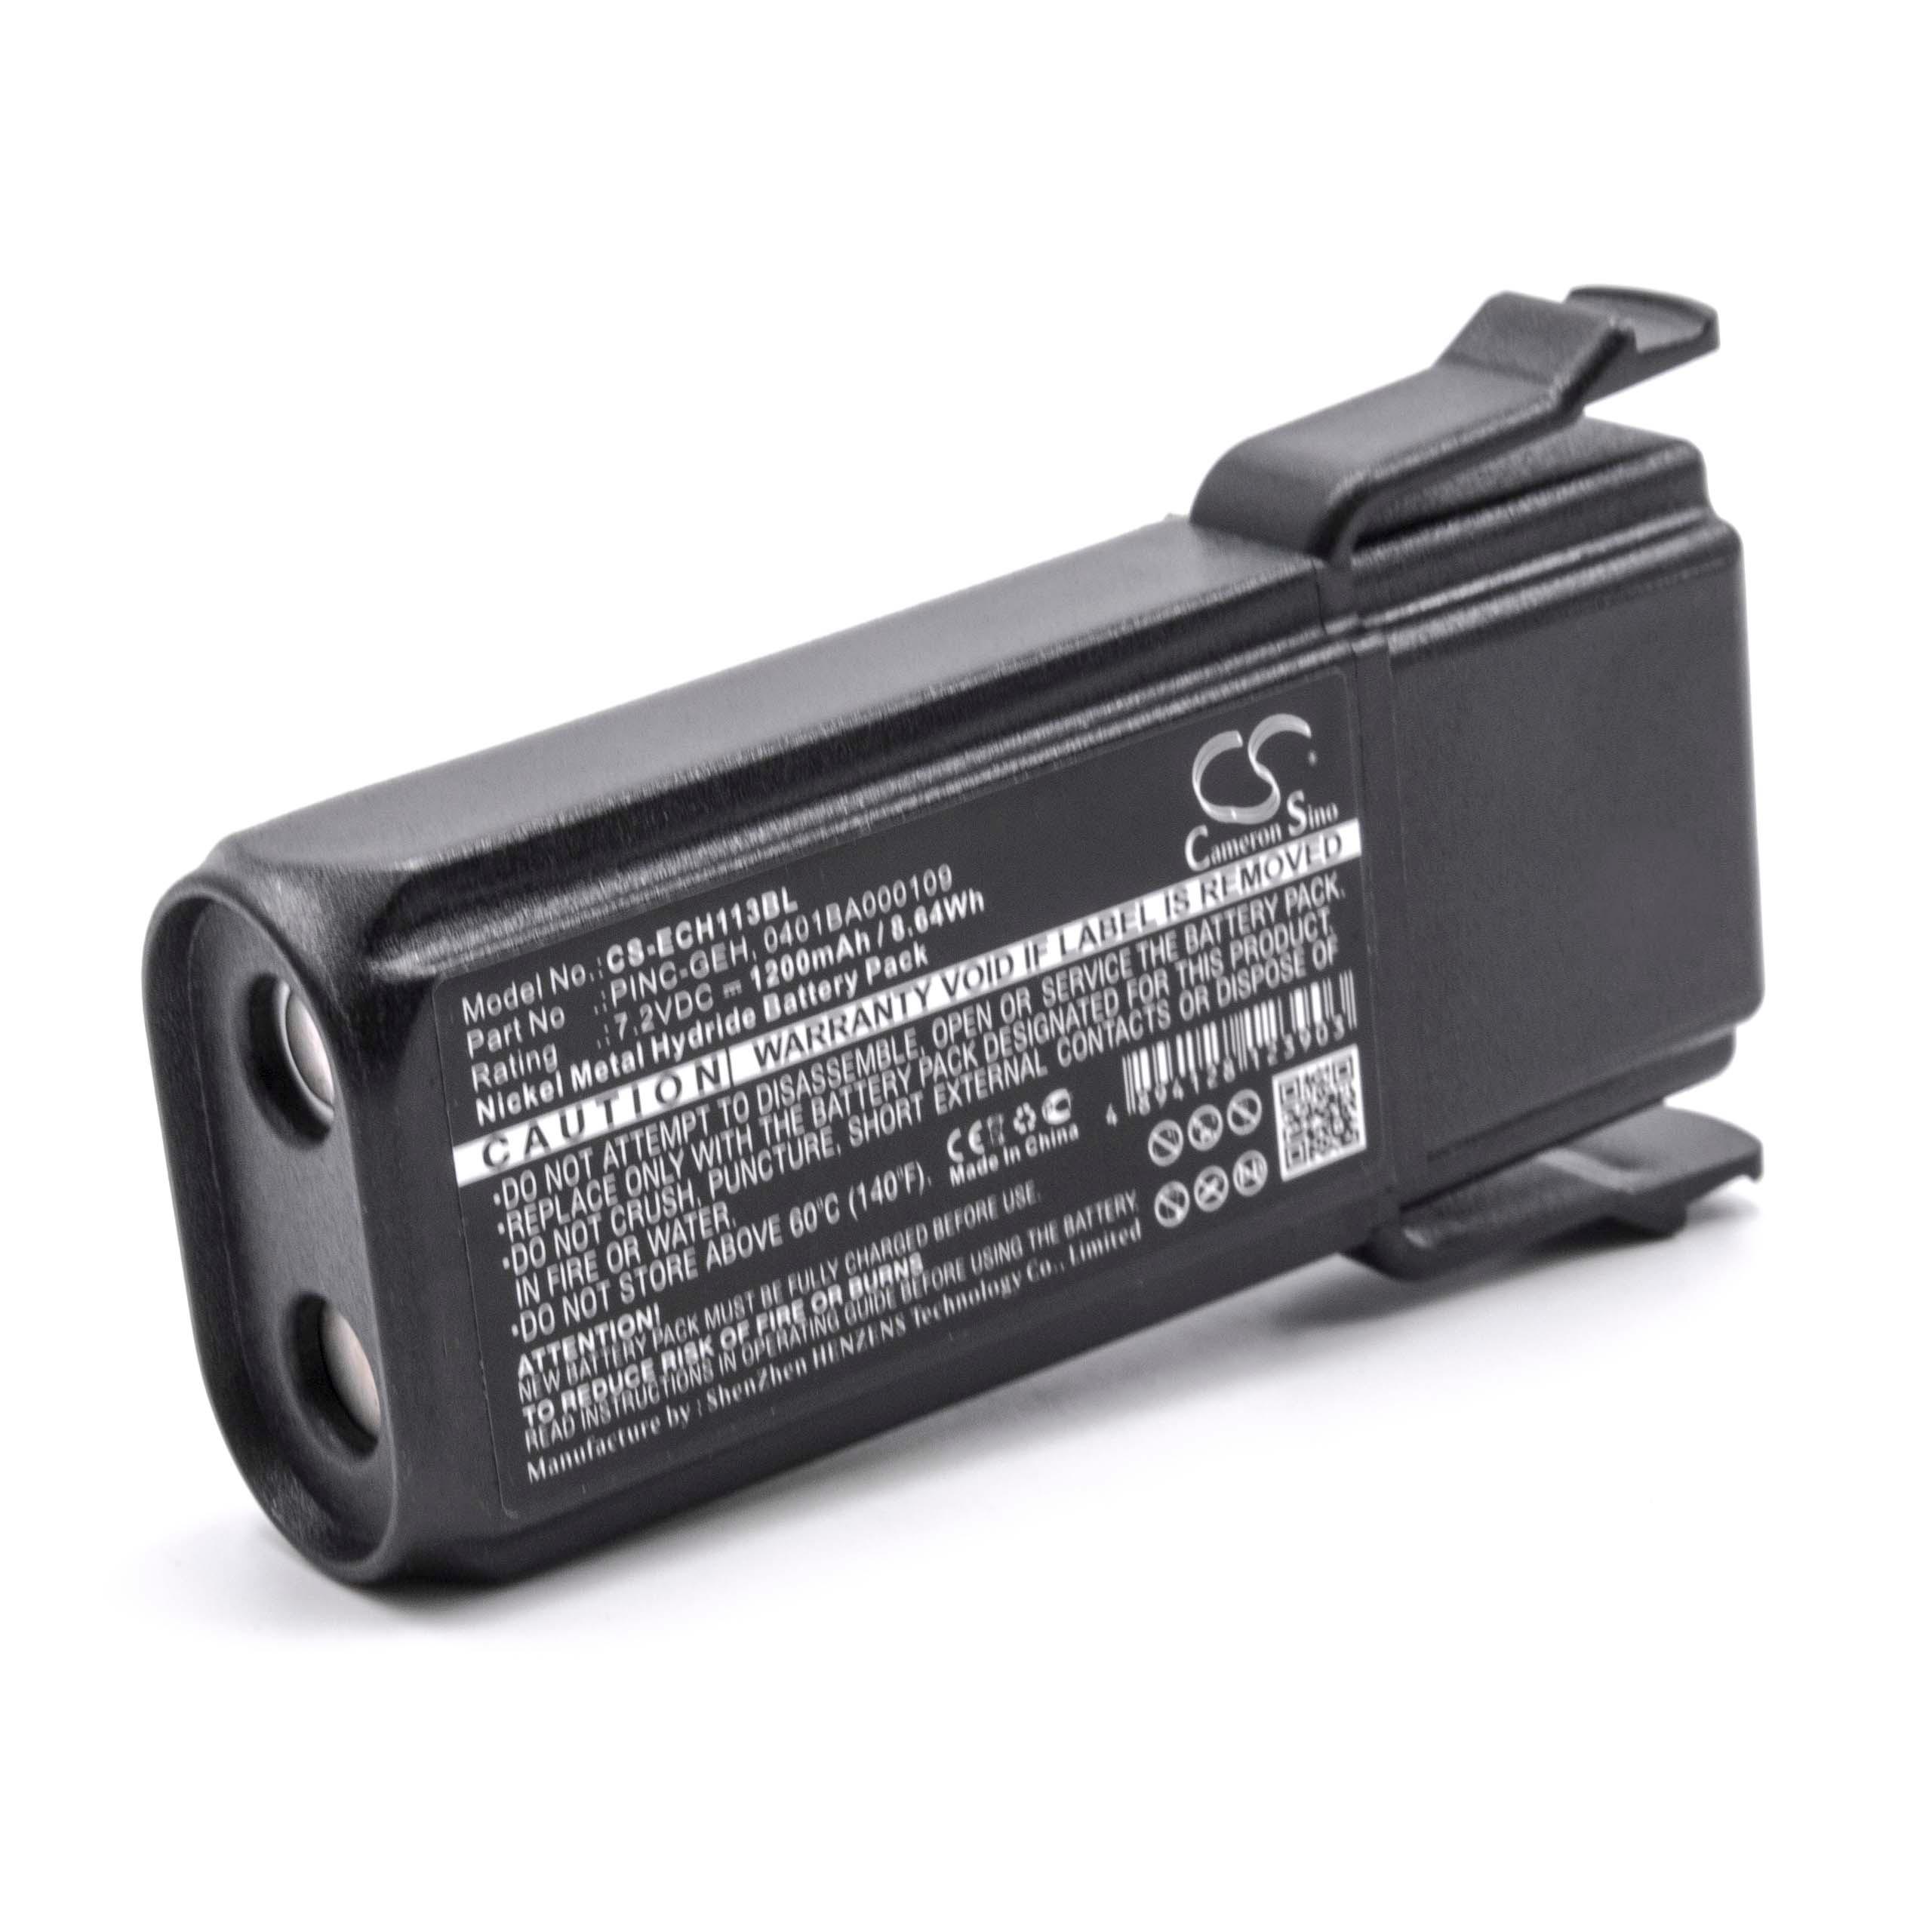 Batteria per telecomando remote controller sostituisce Elca 0401BA000109, 04.142 Elca - 1200mAh 7,2V NiMH